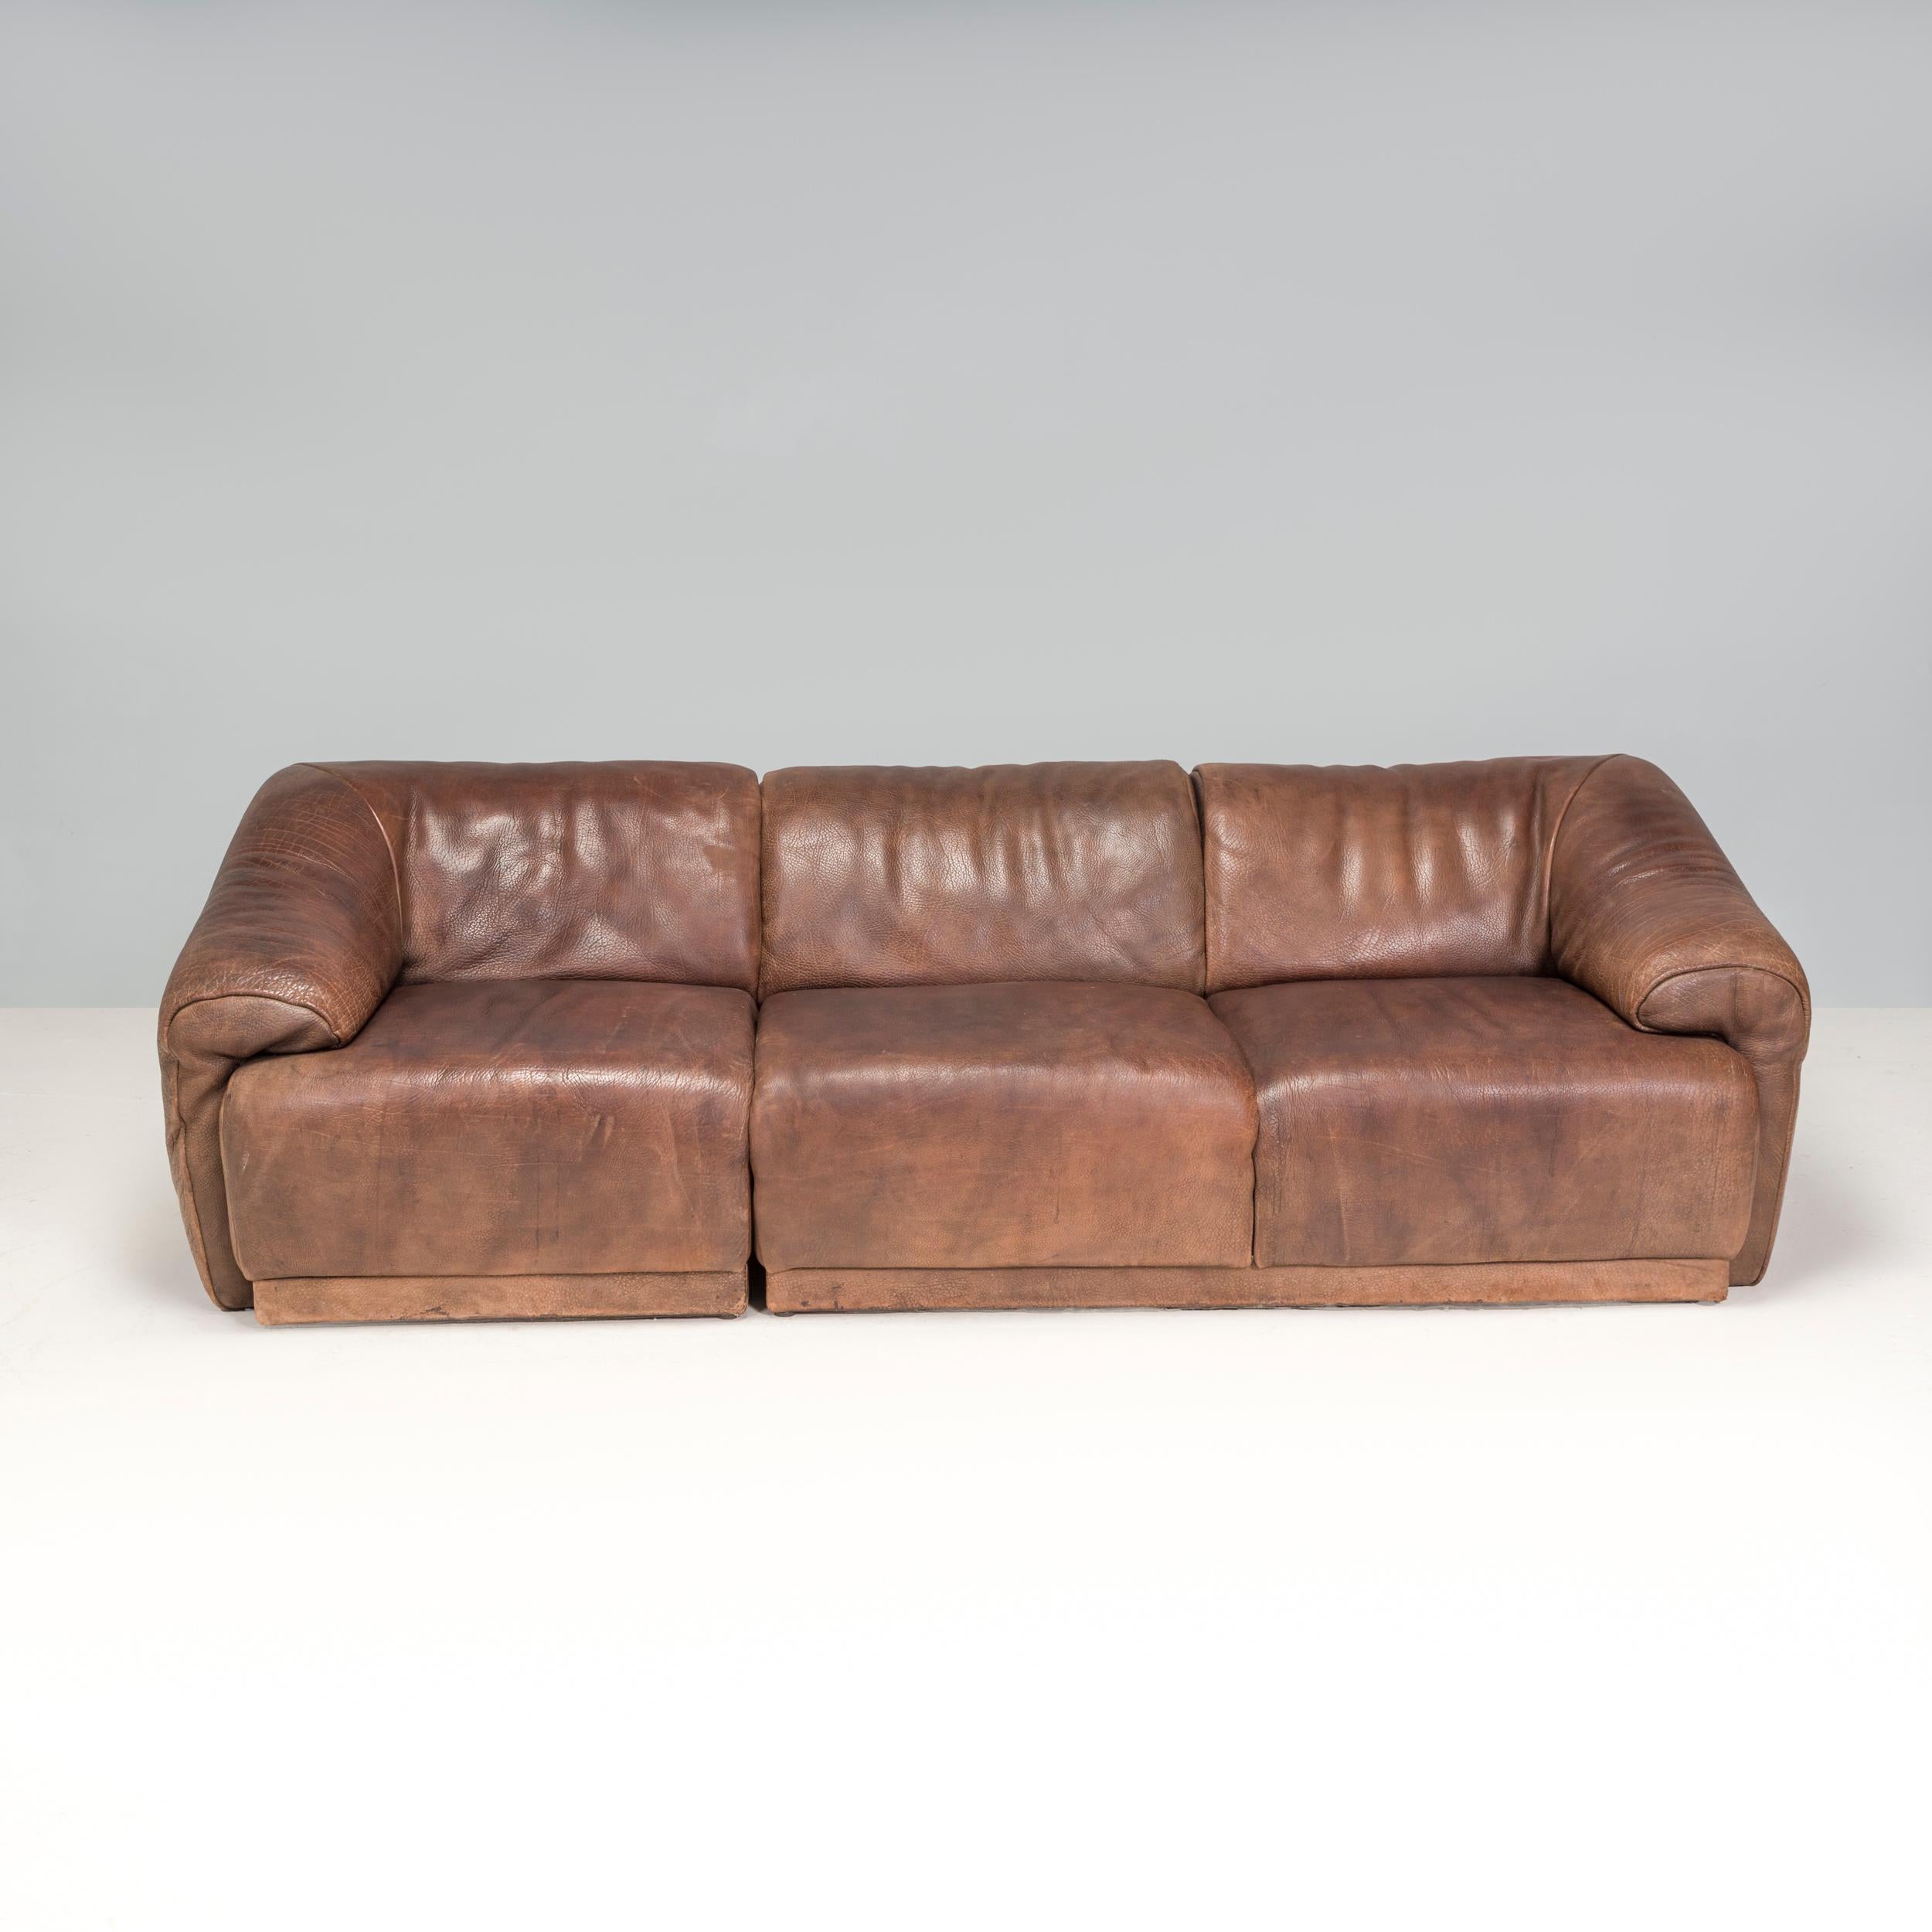 Die 1965 gegründete Möbelfirma De Sede ist seither vor allem für ihr hochwertiges Lederdesign und ihre kultigen Sofas und Sessel bekannt.

Dieses vollständig mit weichem braunen Büffelleder gepolsterte Sofa aus den 1970er Jahren hat eine